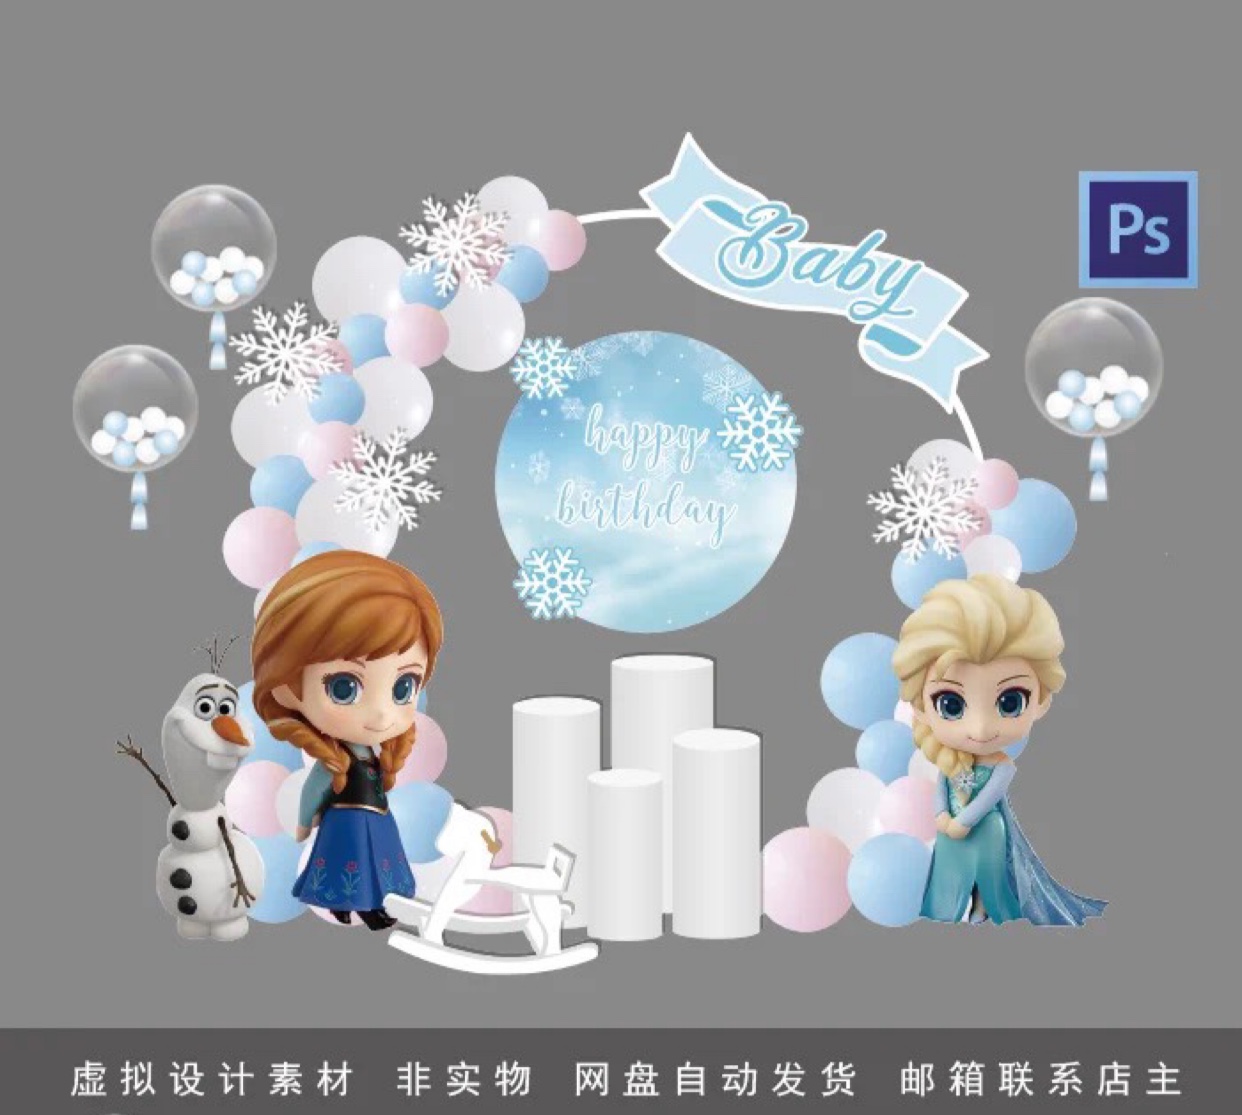 冰雪奇缘艾莎公主主题气球拱门宝宝宴女孩生日派对背景设计素材Ps